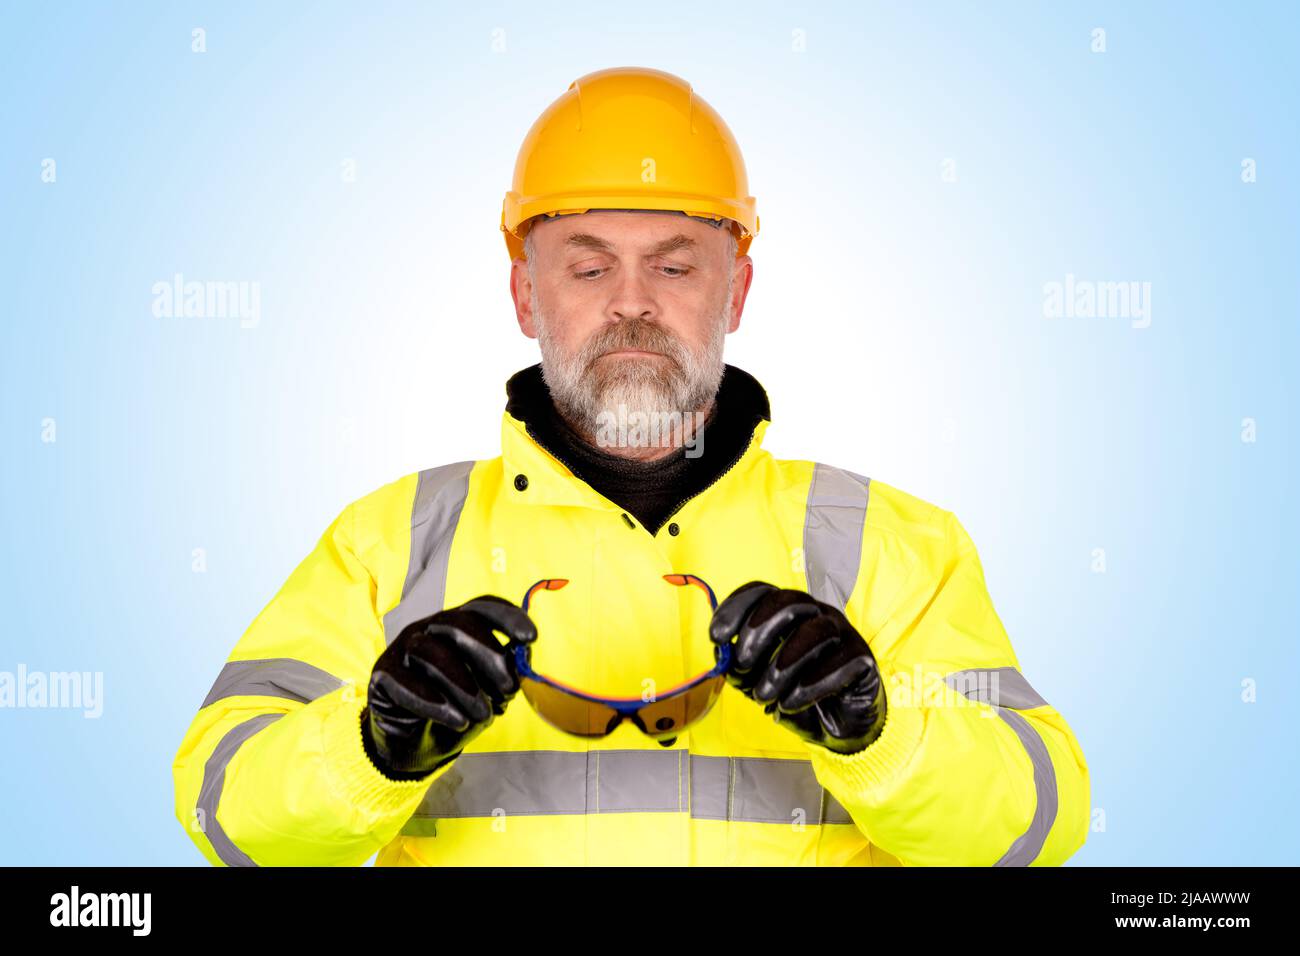 Bauarbeiter mit gelber weste steht vor dem see. arbeiter mit gelbem helm